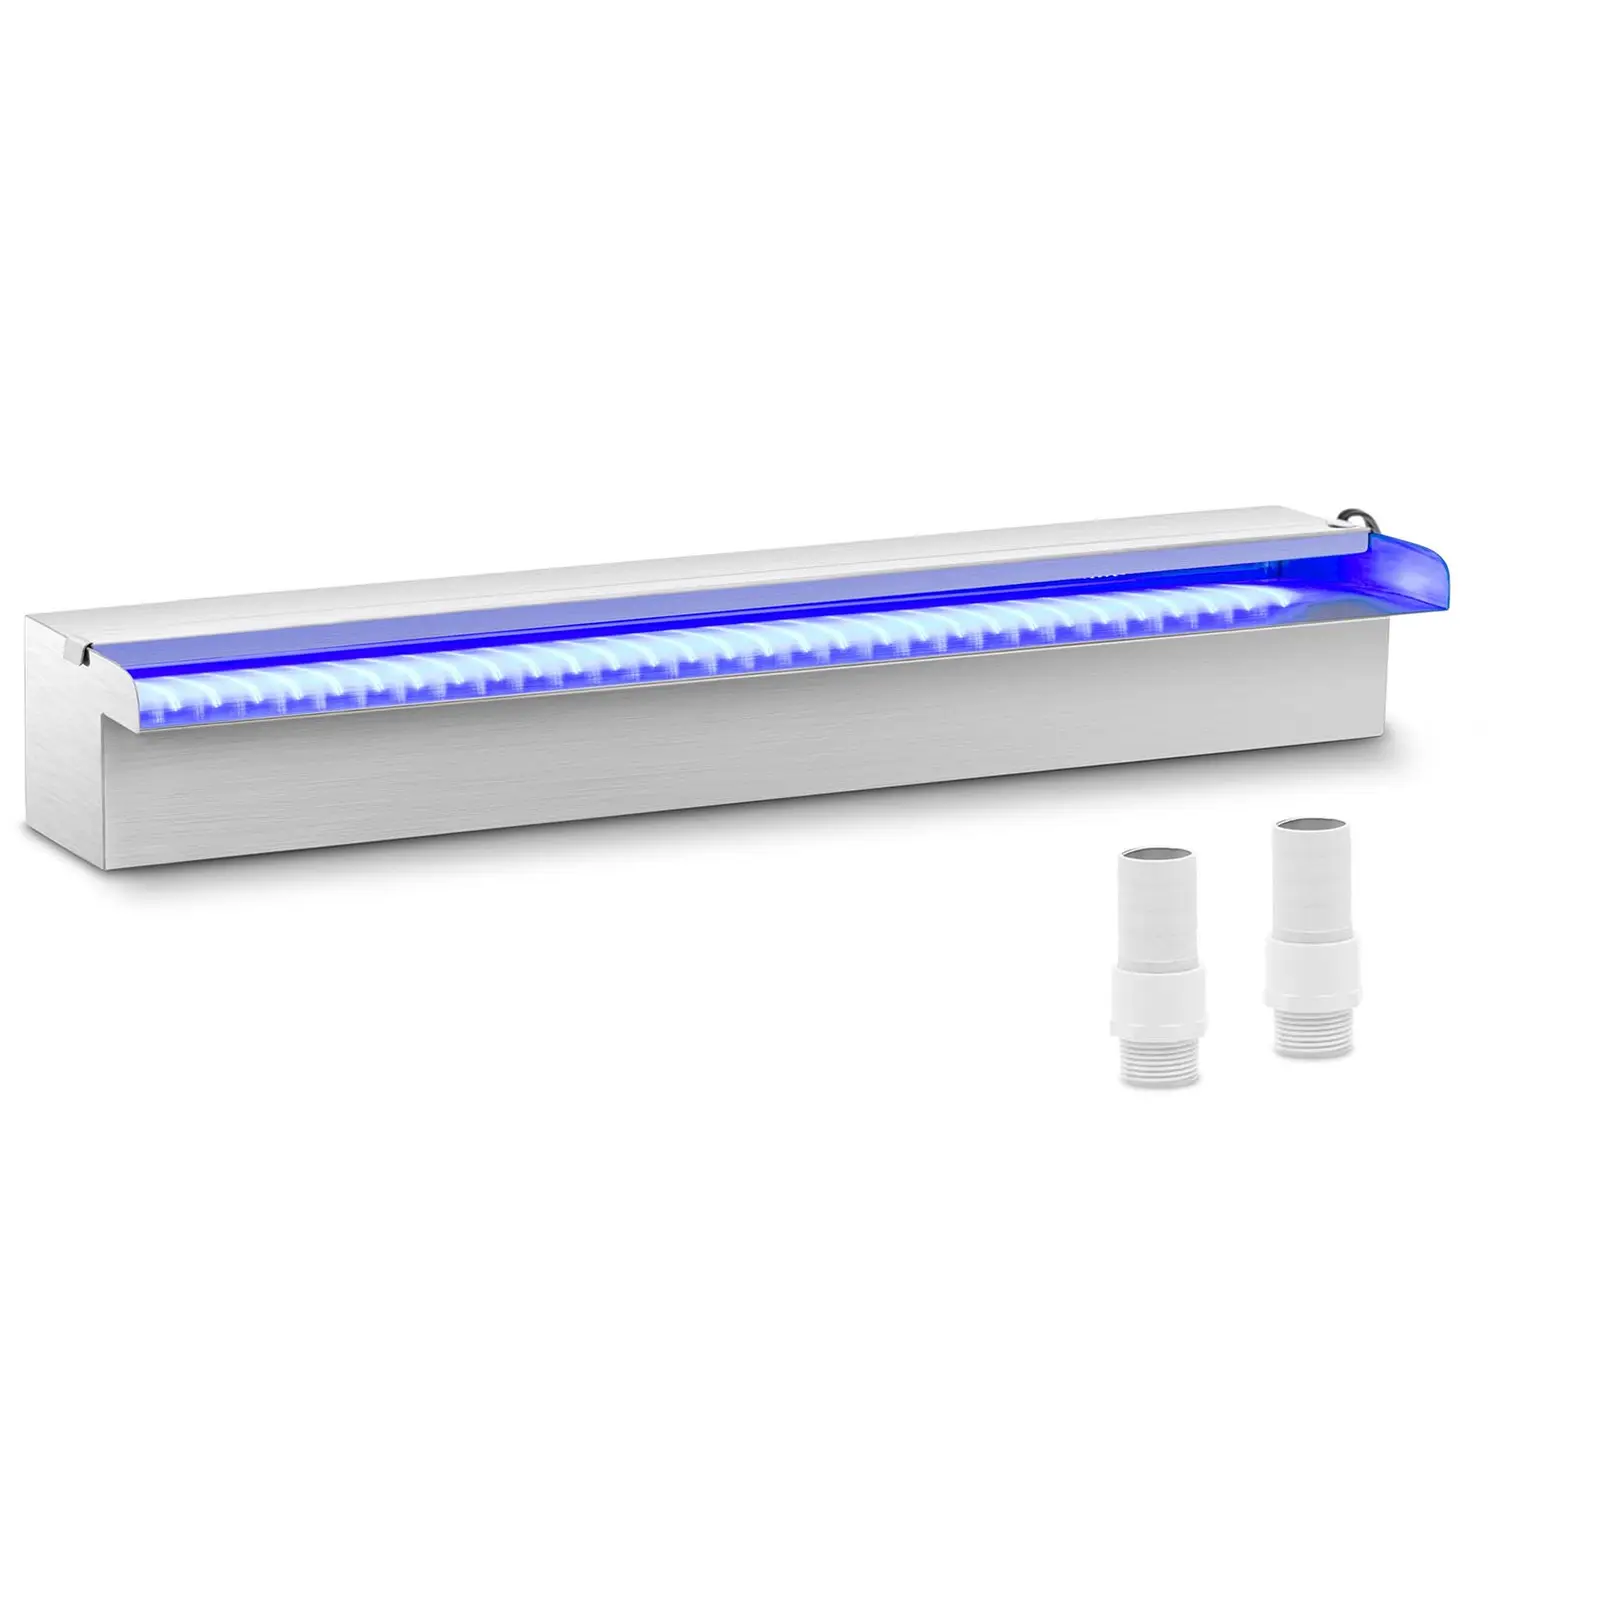 Duș de supratensiune - 60 cm - Iluminare cu LED-uri - Albastru / Albastru